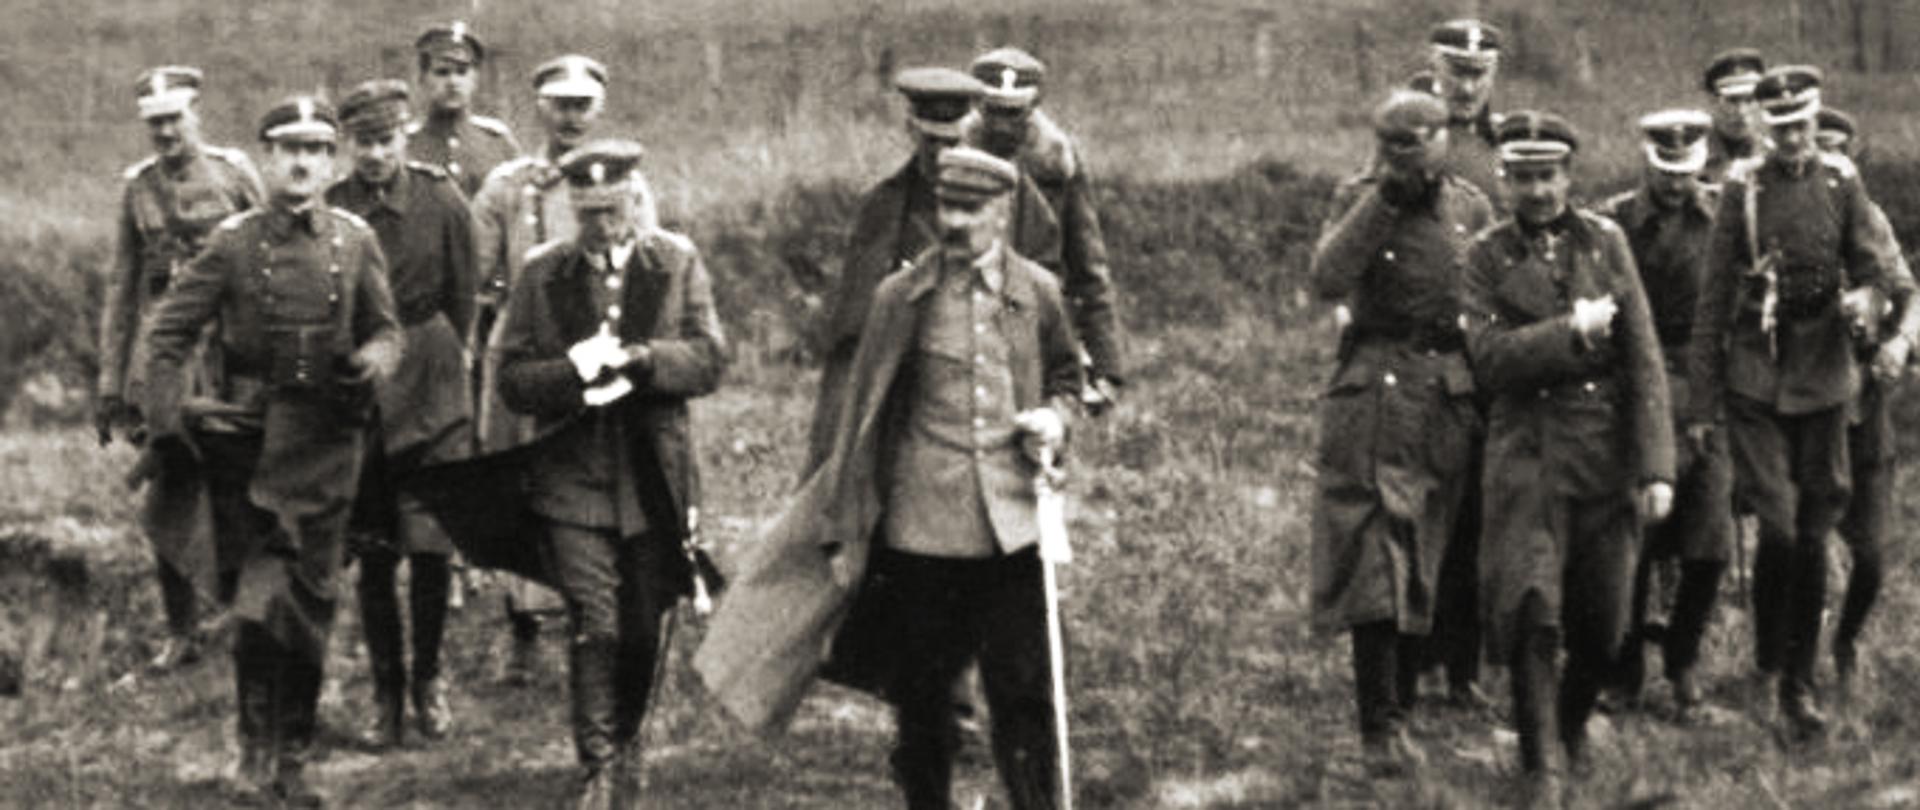 Valsts vadītājs Juzefs Pilsudskis ar virsnieku štābu, 1920.g. Nezināms autors. Avots – Wikimedia Commons [25.06.2020]; Centralne Archiwum Wojskowe, Warszawa